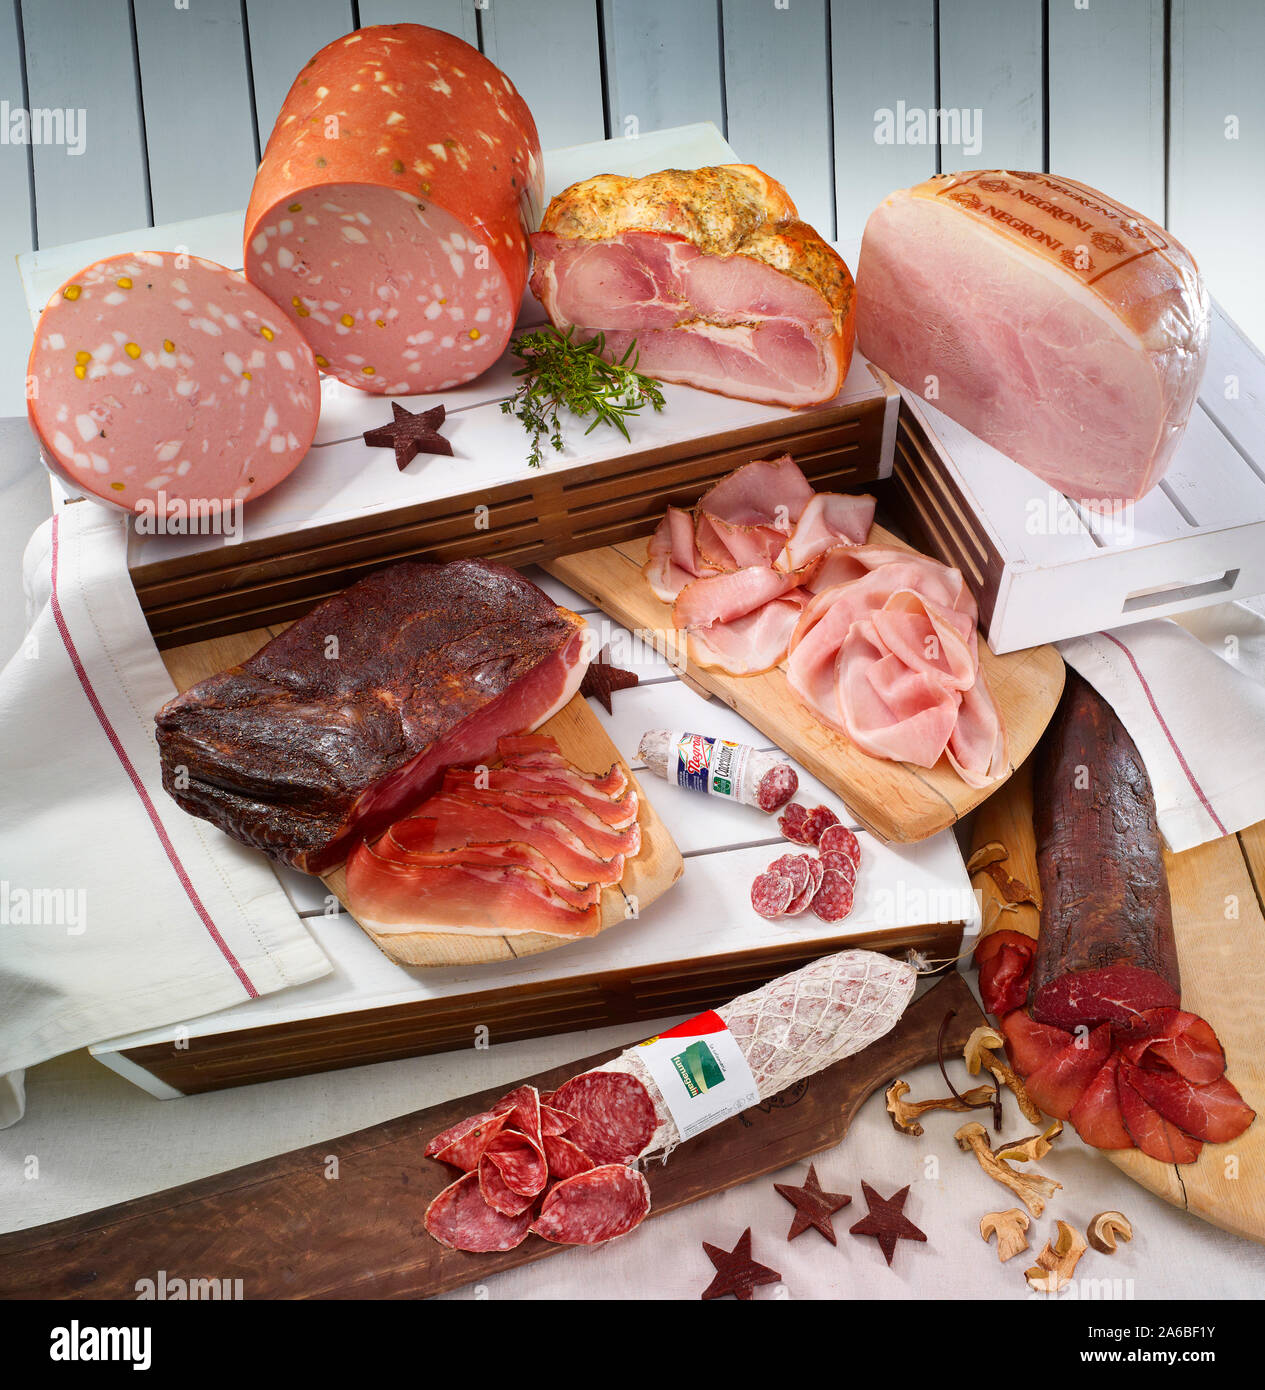 Jambon, salami et saucisses sur les caisses en bois Banque D'Images